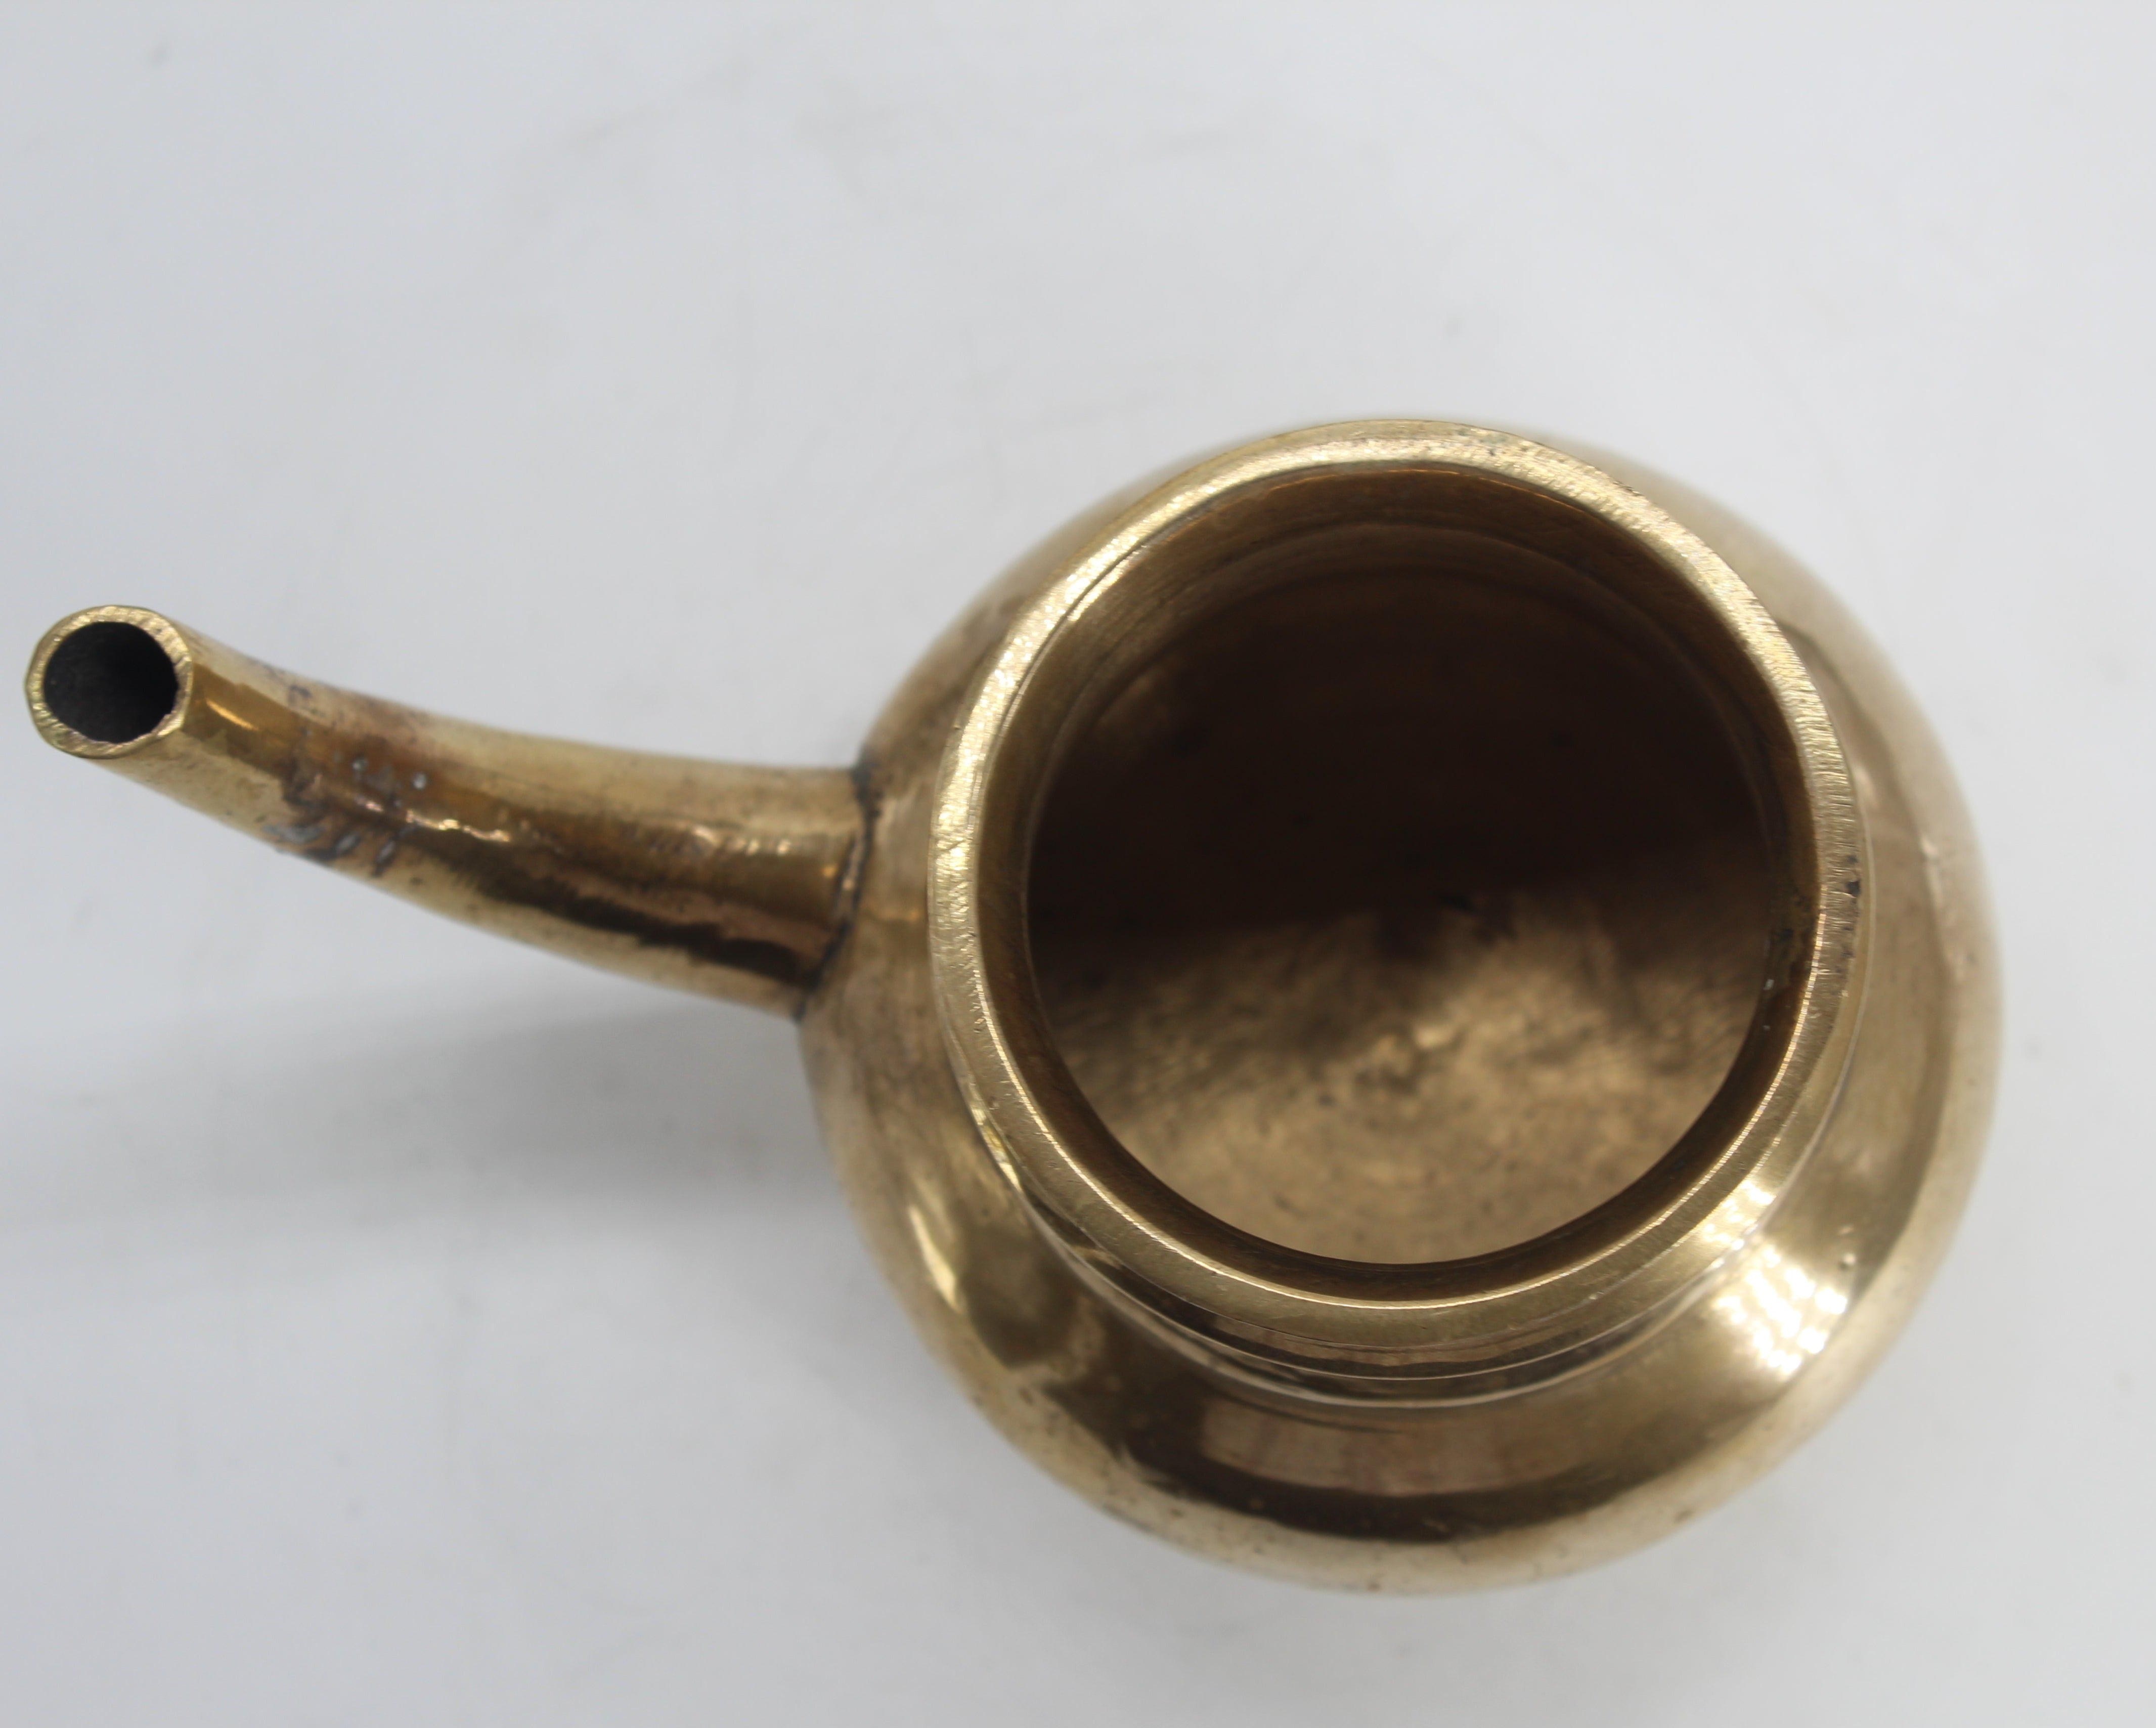 Brass Naadan Kindi - Premium Brass from Cherakulam Vessels & Crockery - Just Rs. 847! Shop now at Cherakulam Vessels & Crockery